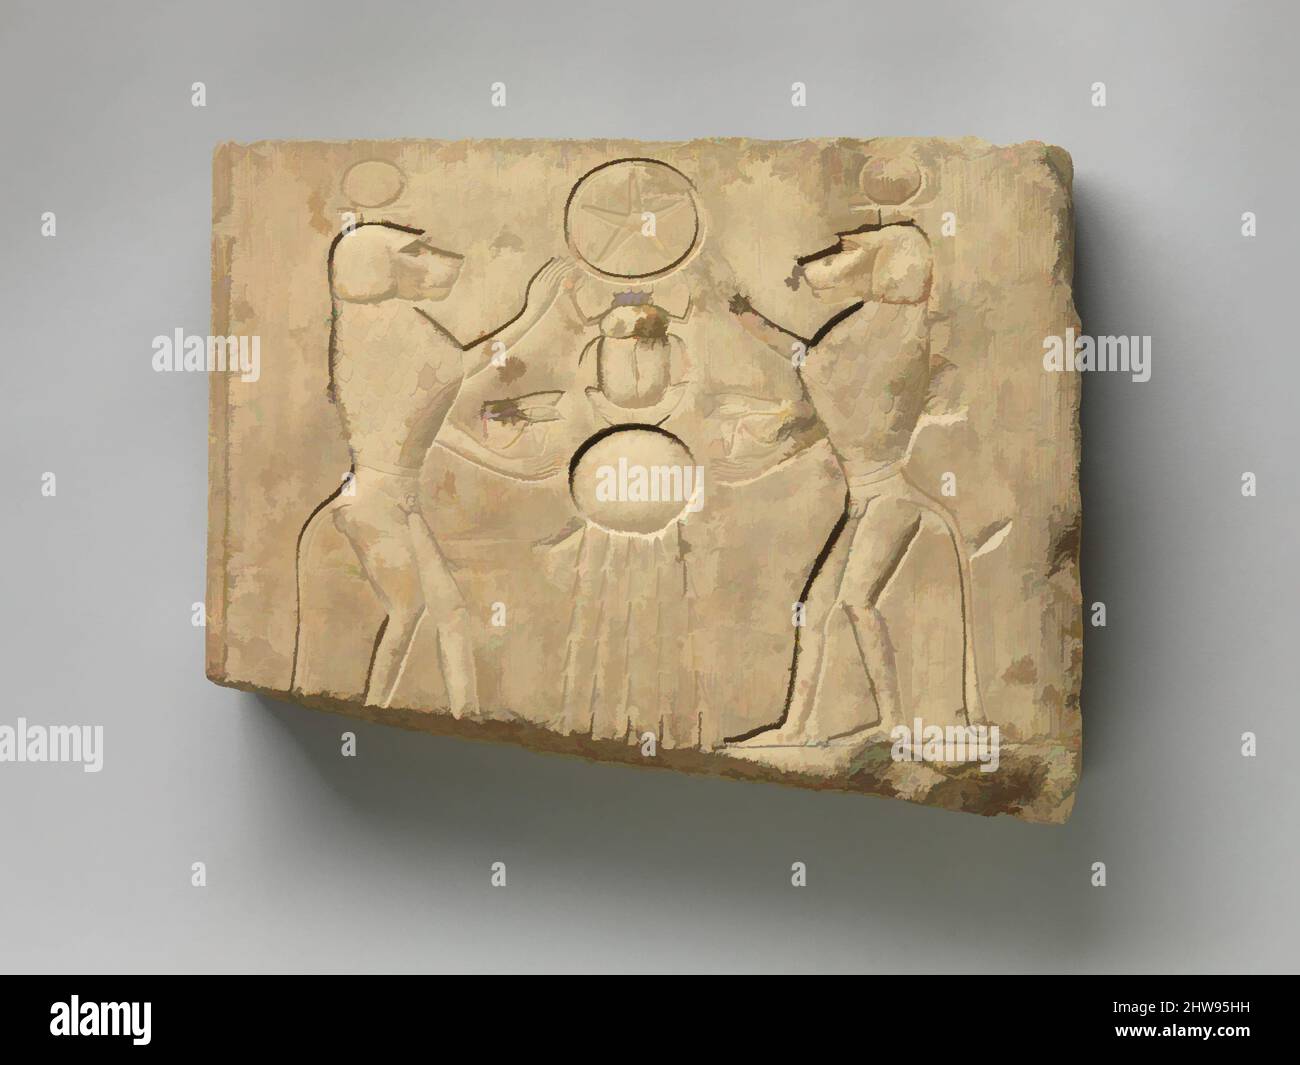 Von Relief inspirierte Kunst, die zwei Paviane zeigt, die dem sonnengott Khepri, der das Unterwelt-Zeichen hält, das Hochzeitsauge darbringen, aus der späten – ptolemäischen Zeit, 400–200 v. Chr., aus Ägypten, Kalkstein, H. 30,9 cm (12 3/16 in.); B. 39,3 cm (15 1/2 in.); D. 6 cm (2 3/8 in.), in dieser Szene zwei klassische Werke, die von Artotop mit einem Schuss Moderne modernisiert wurden. Formen, Farbe und Wert, auffällige visuelle Wirkung auf Kunst. Emotionen durch Freiheit von Kunstwerken auf zeitgemäße Weise. Eine zeitlose Botschaft, die eine wild kreative neue Richtung verfolgt. Künstler, die sich dem digitalen Medium zuwenden und die Artotop NFT erschaffen Stockfoto